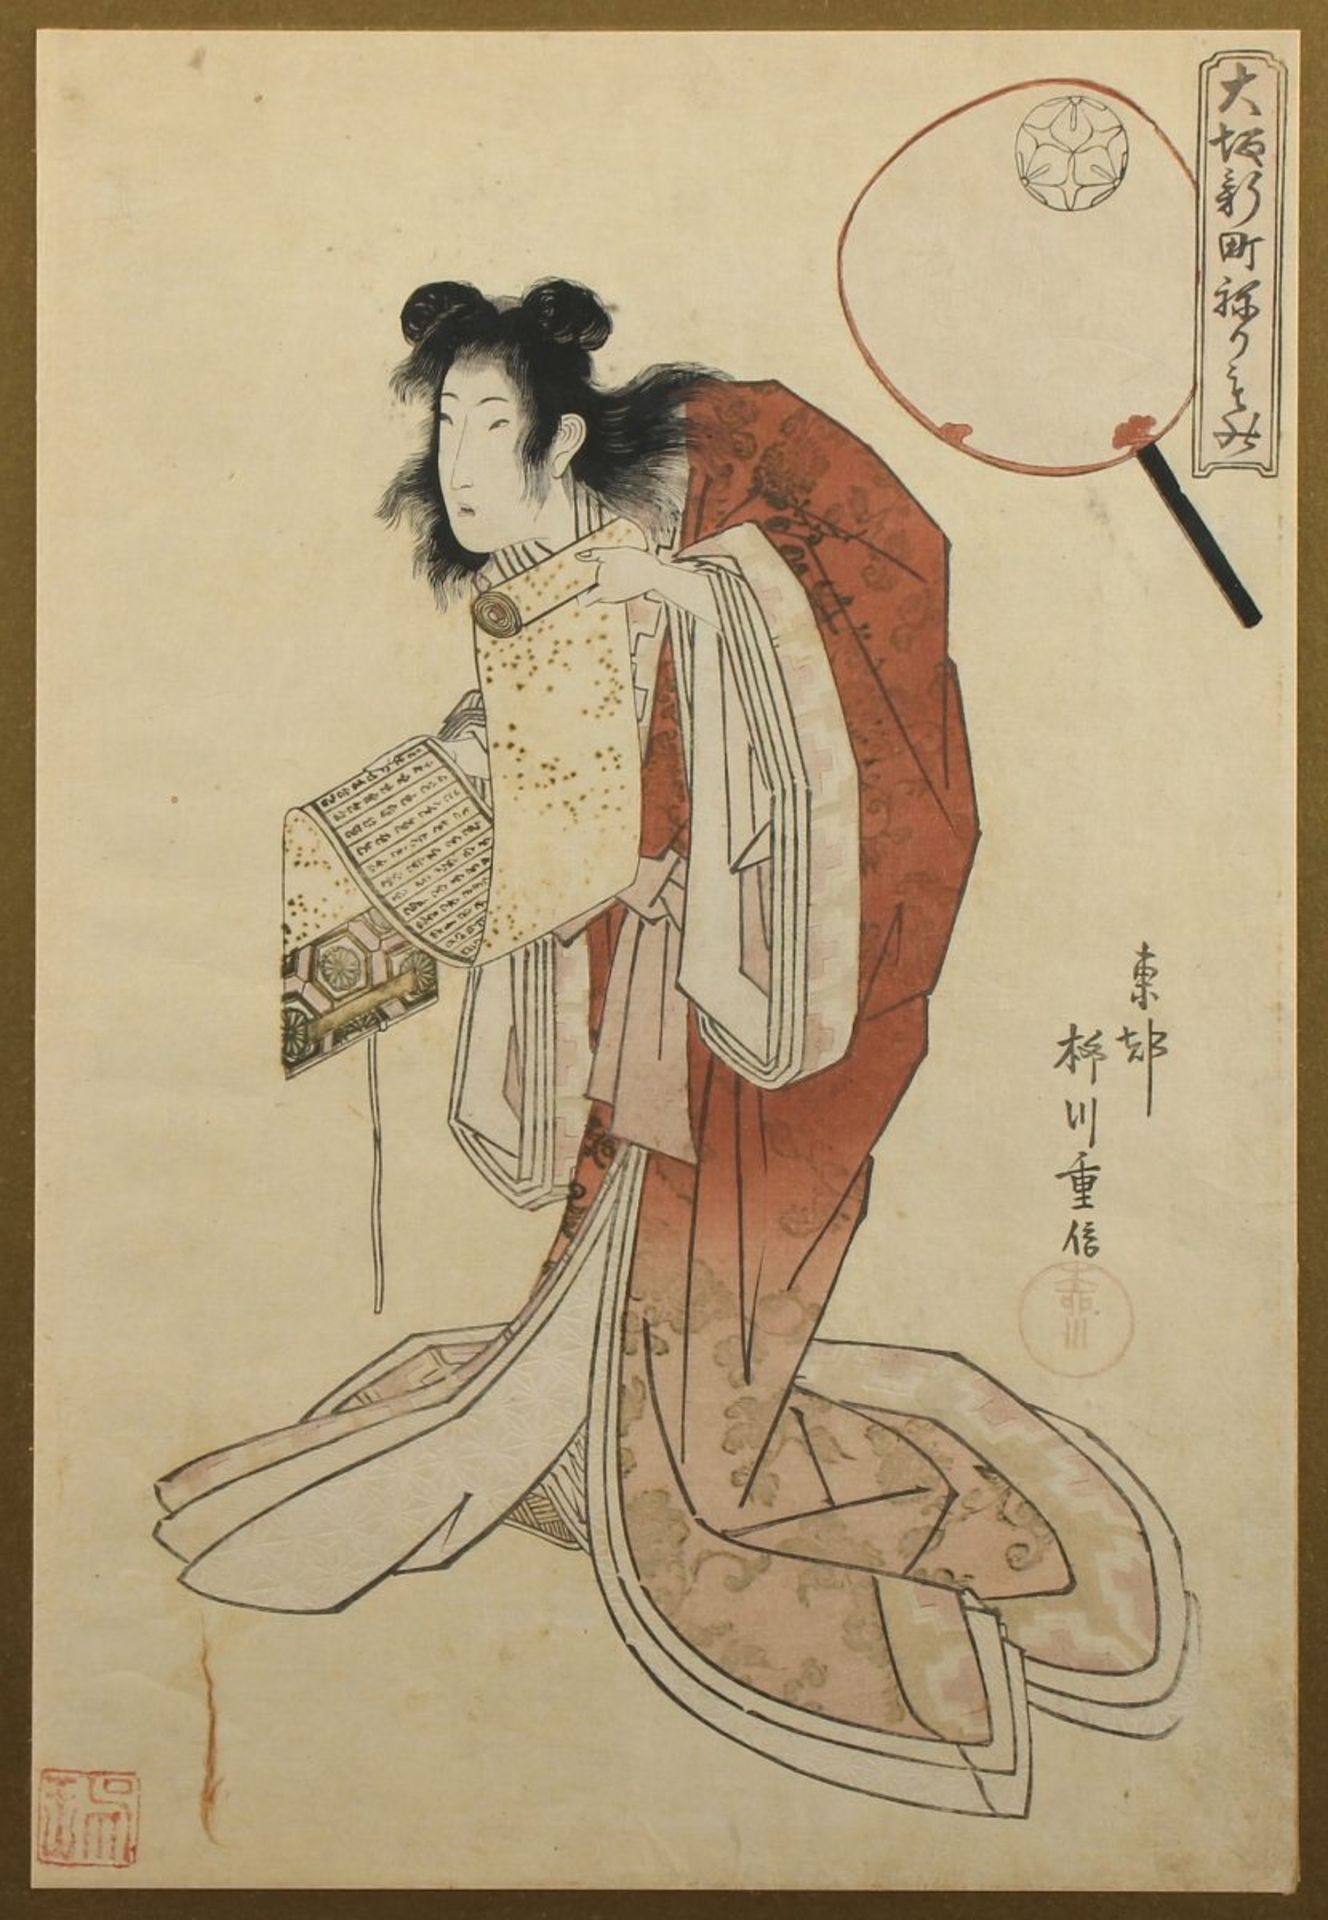 FARBHOLZSCHNITT, Kikugawa EIZAN (1787-1867), "Schauspieler", unter Glas gerahmt, JAPAN, um 1820